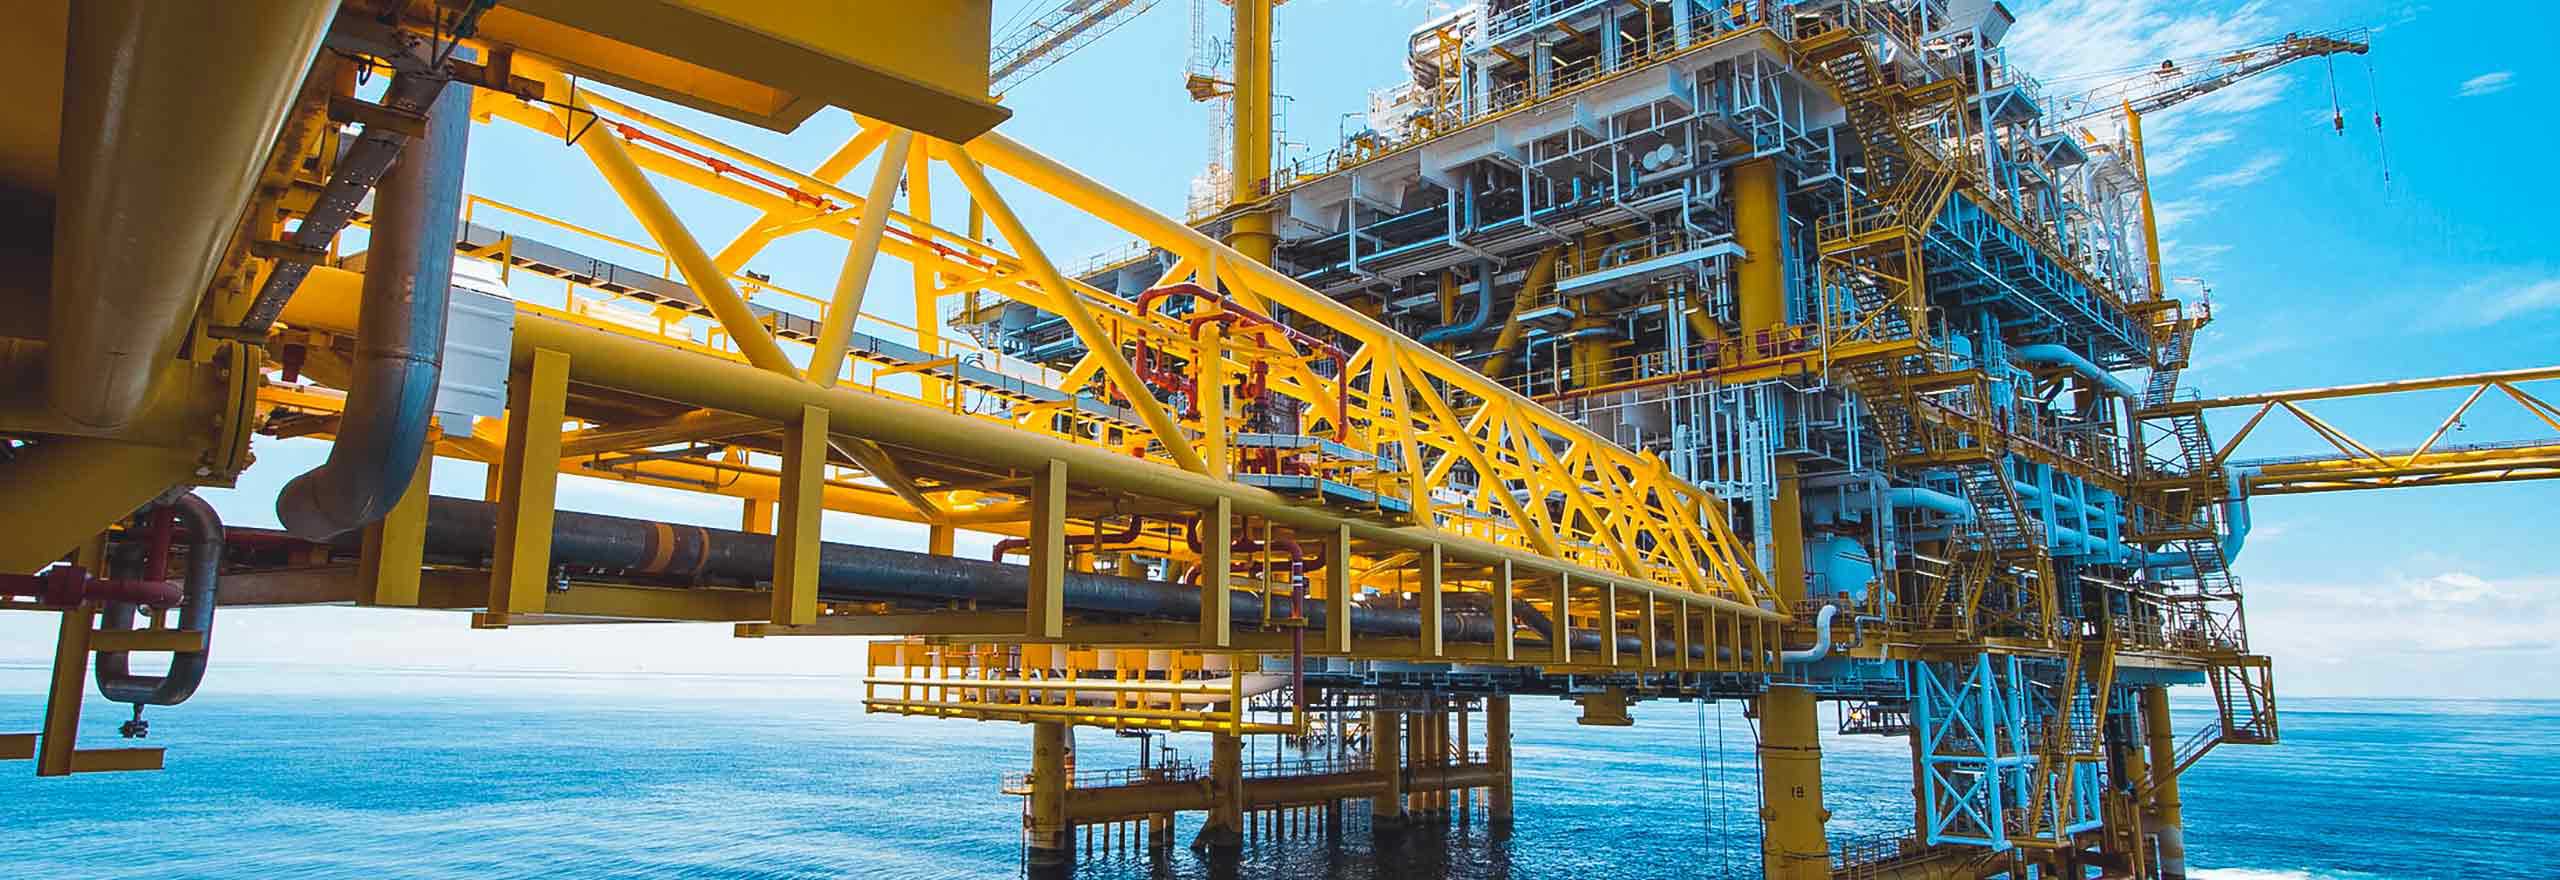 Plataforma offshore utilizando as soluções da Hexagon para o setor de petróleo e gás